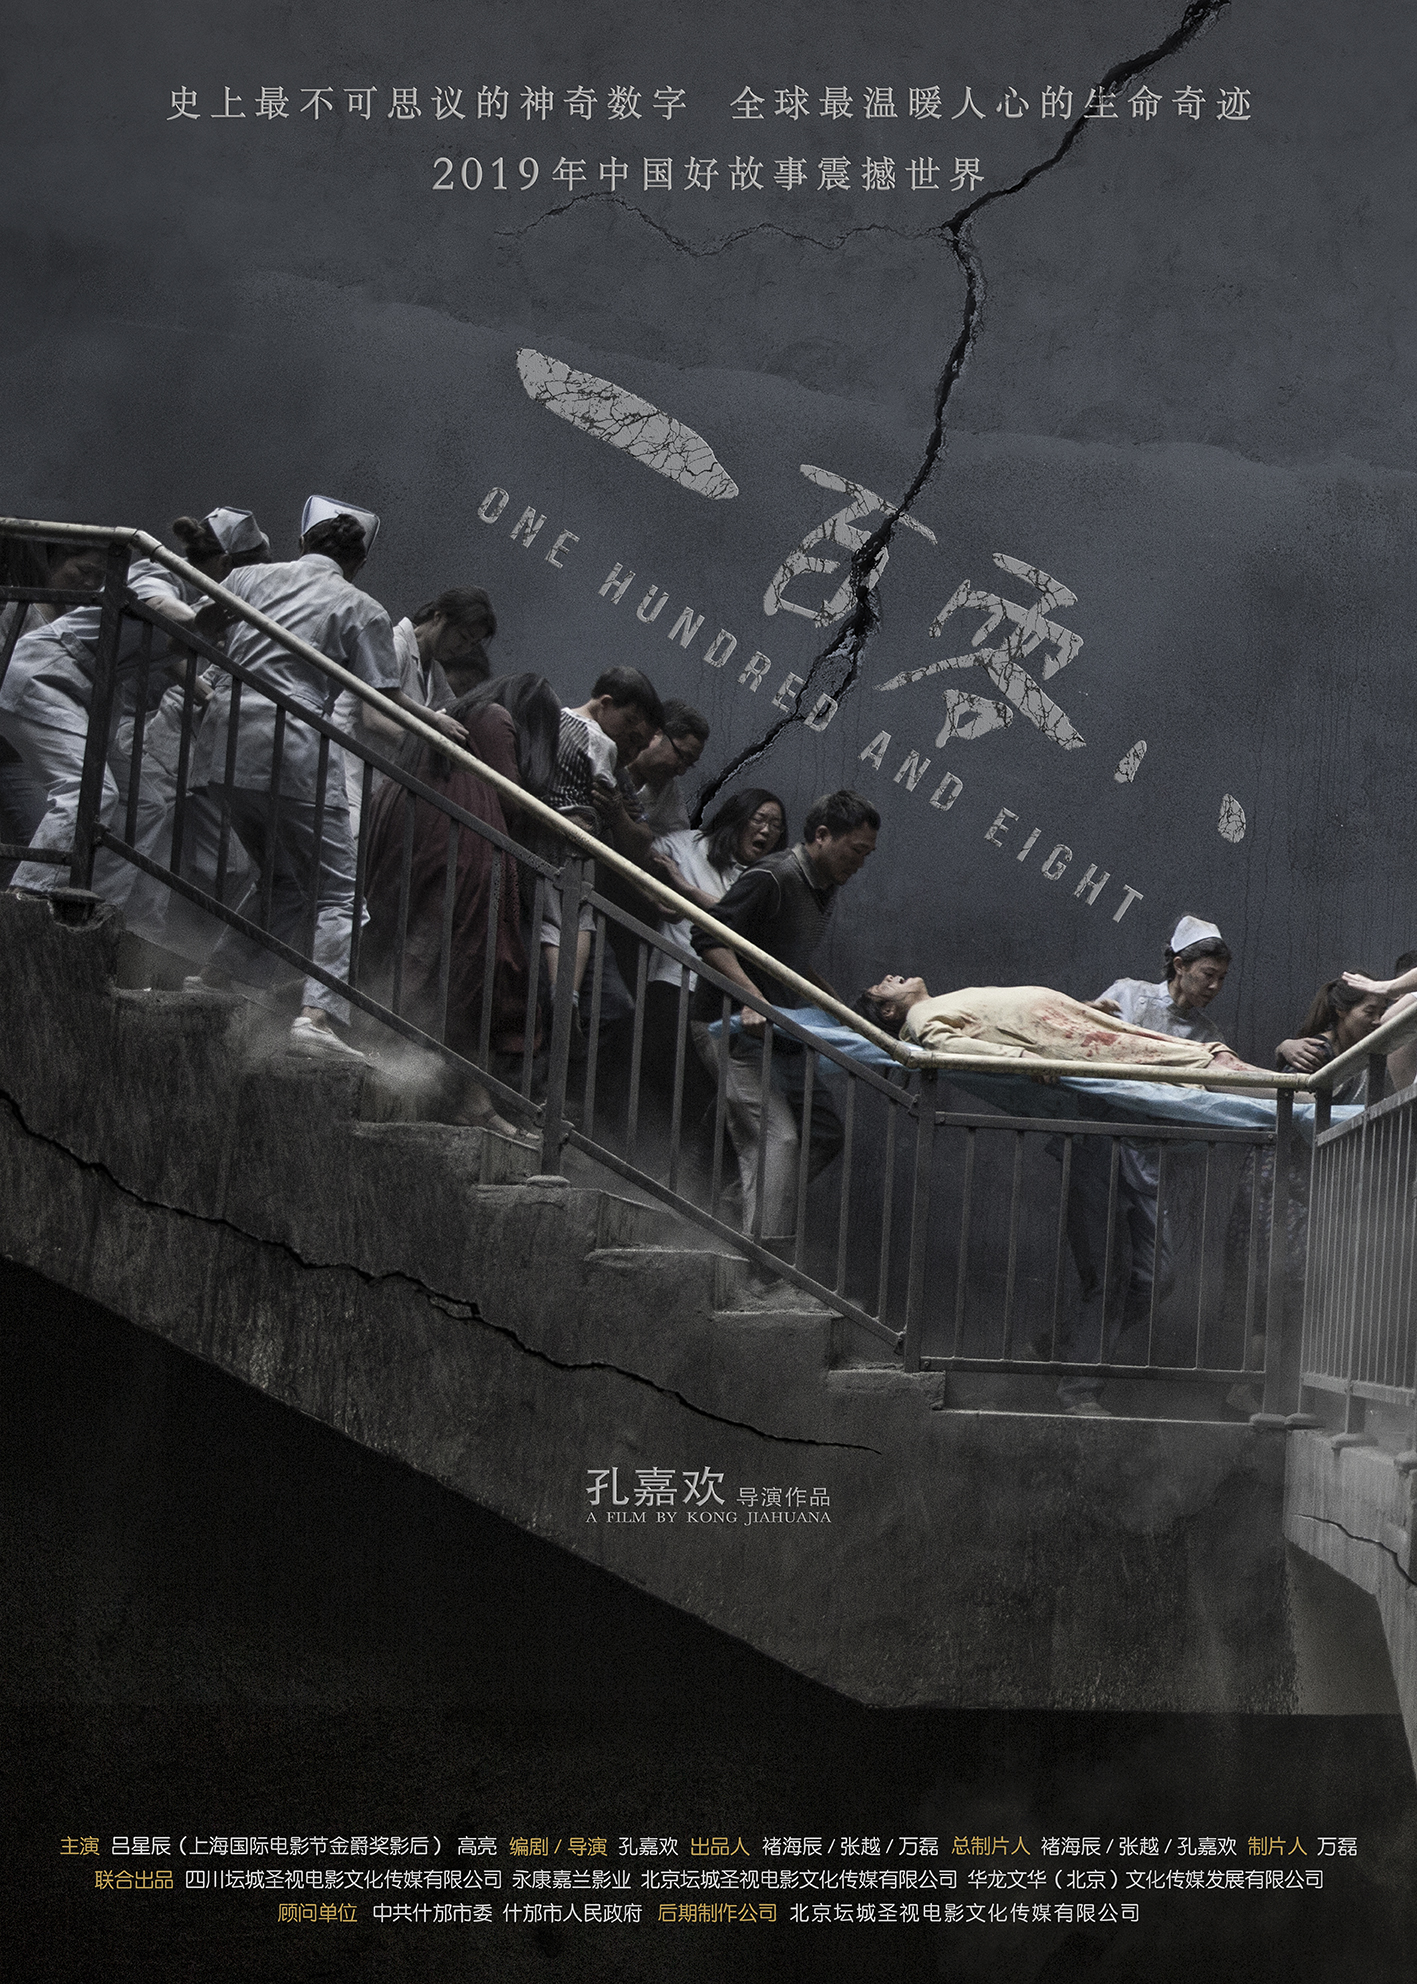 中国首部采用阿卡贝拉配乐的电影《一百零八》石破惊天